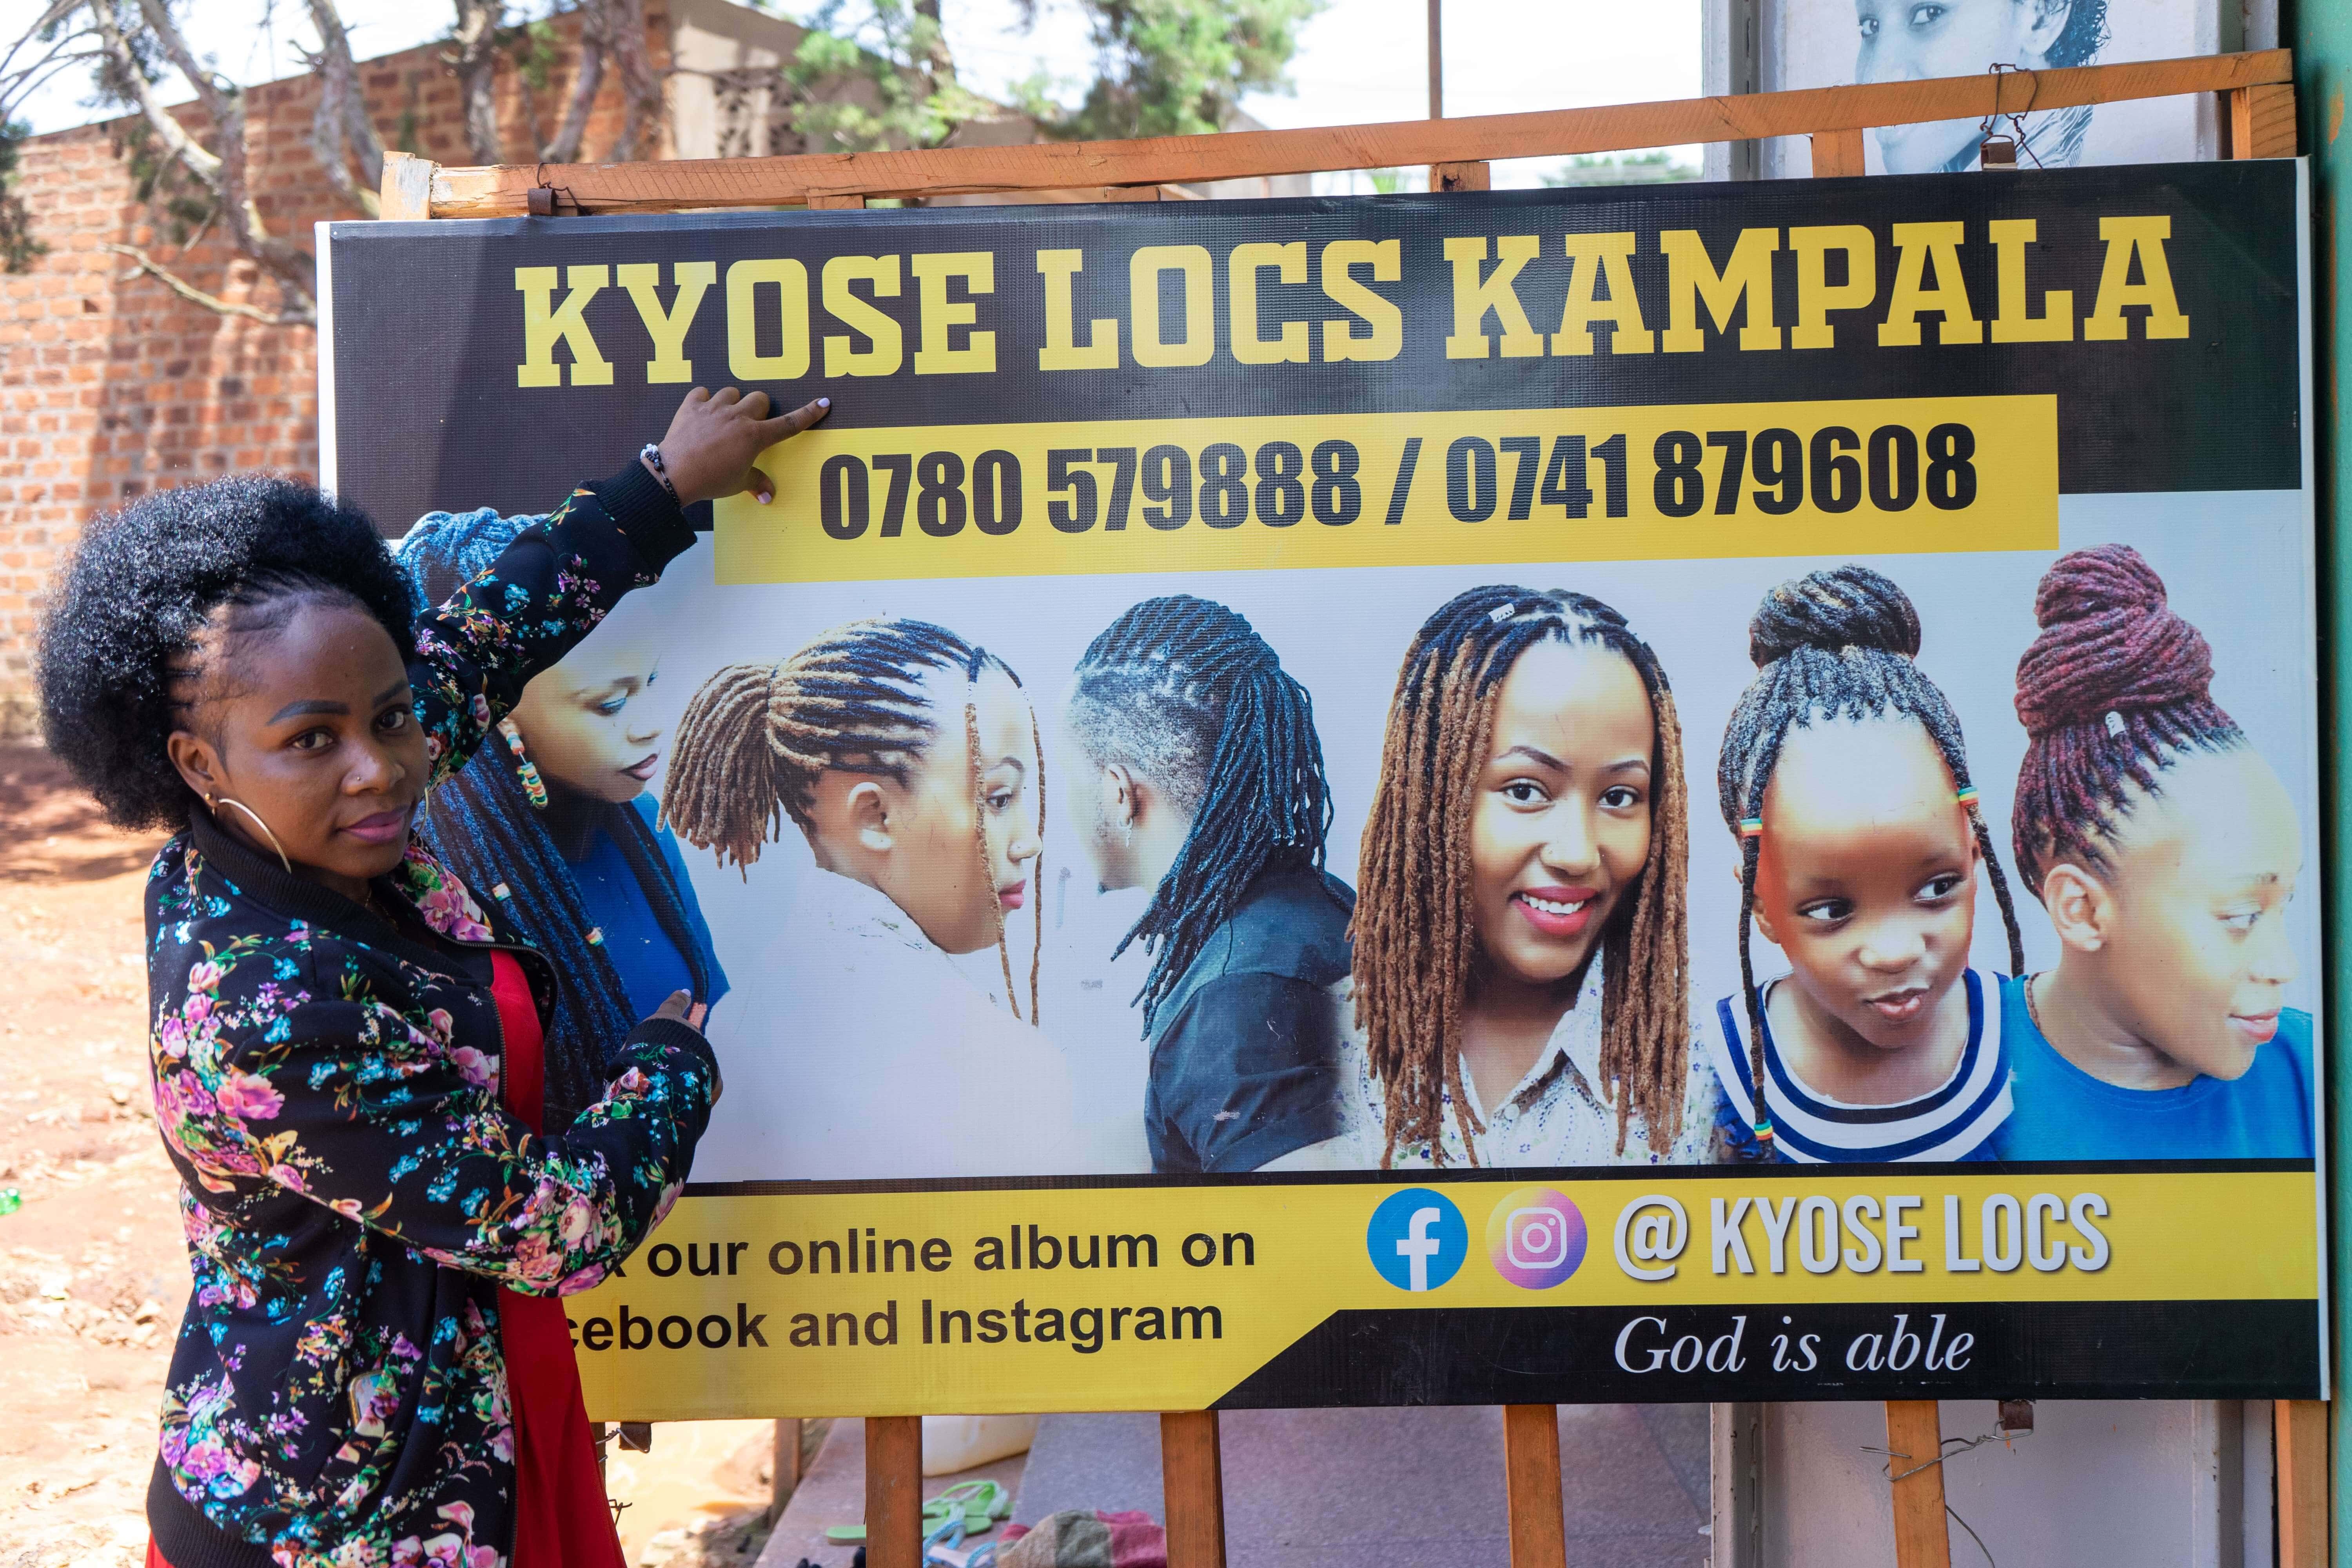 Florence Kavugho displays social media handles for her salon business. Photo: Nathan Ijjo Tibaku/TheIRC